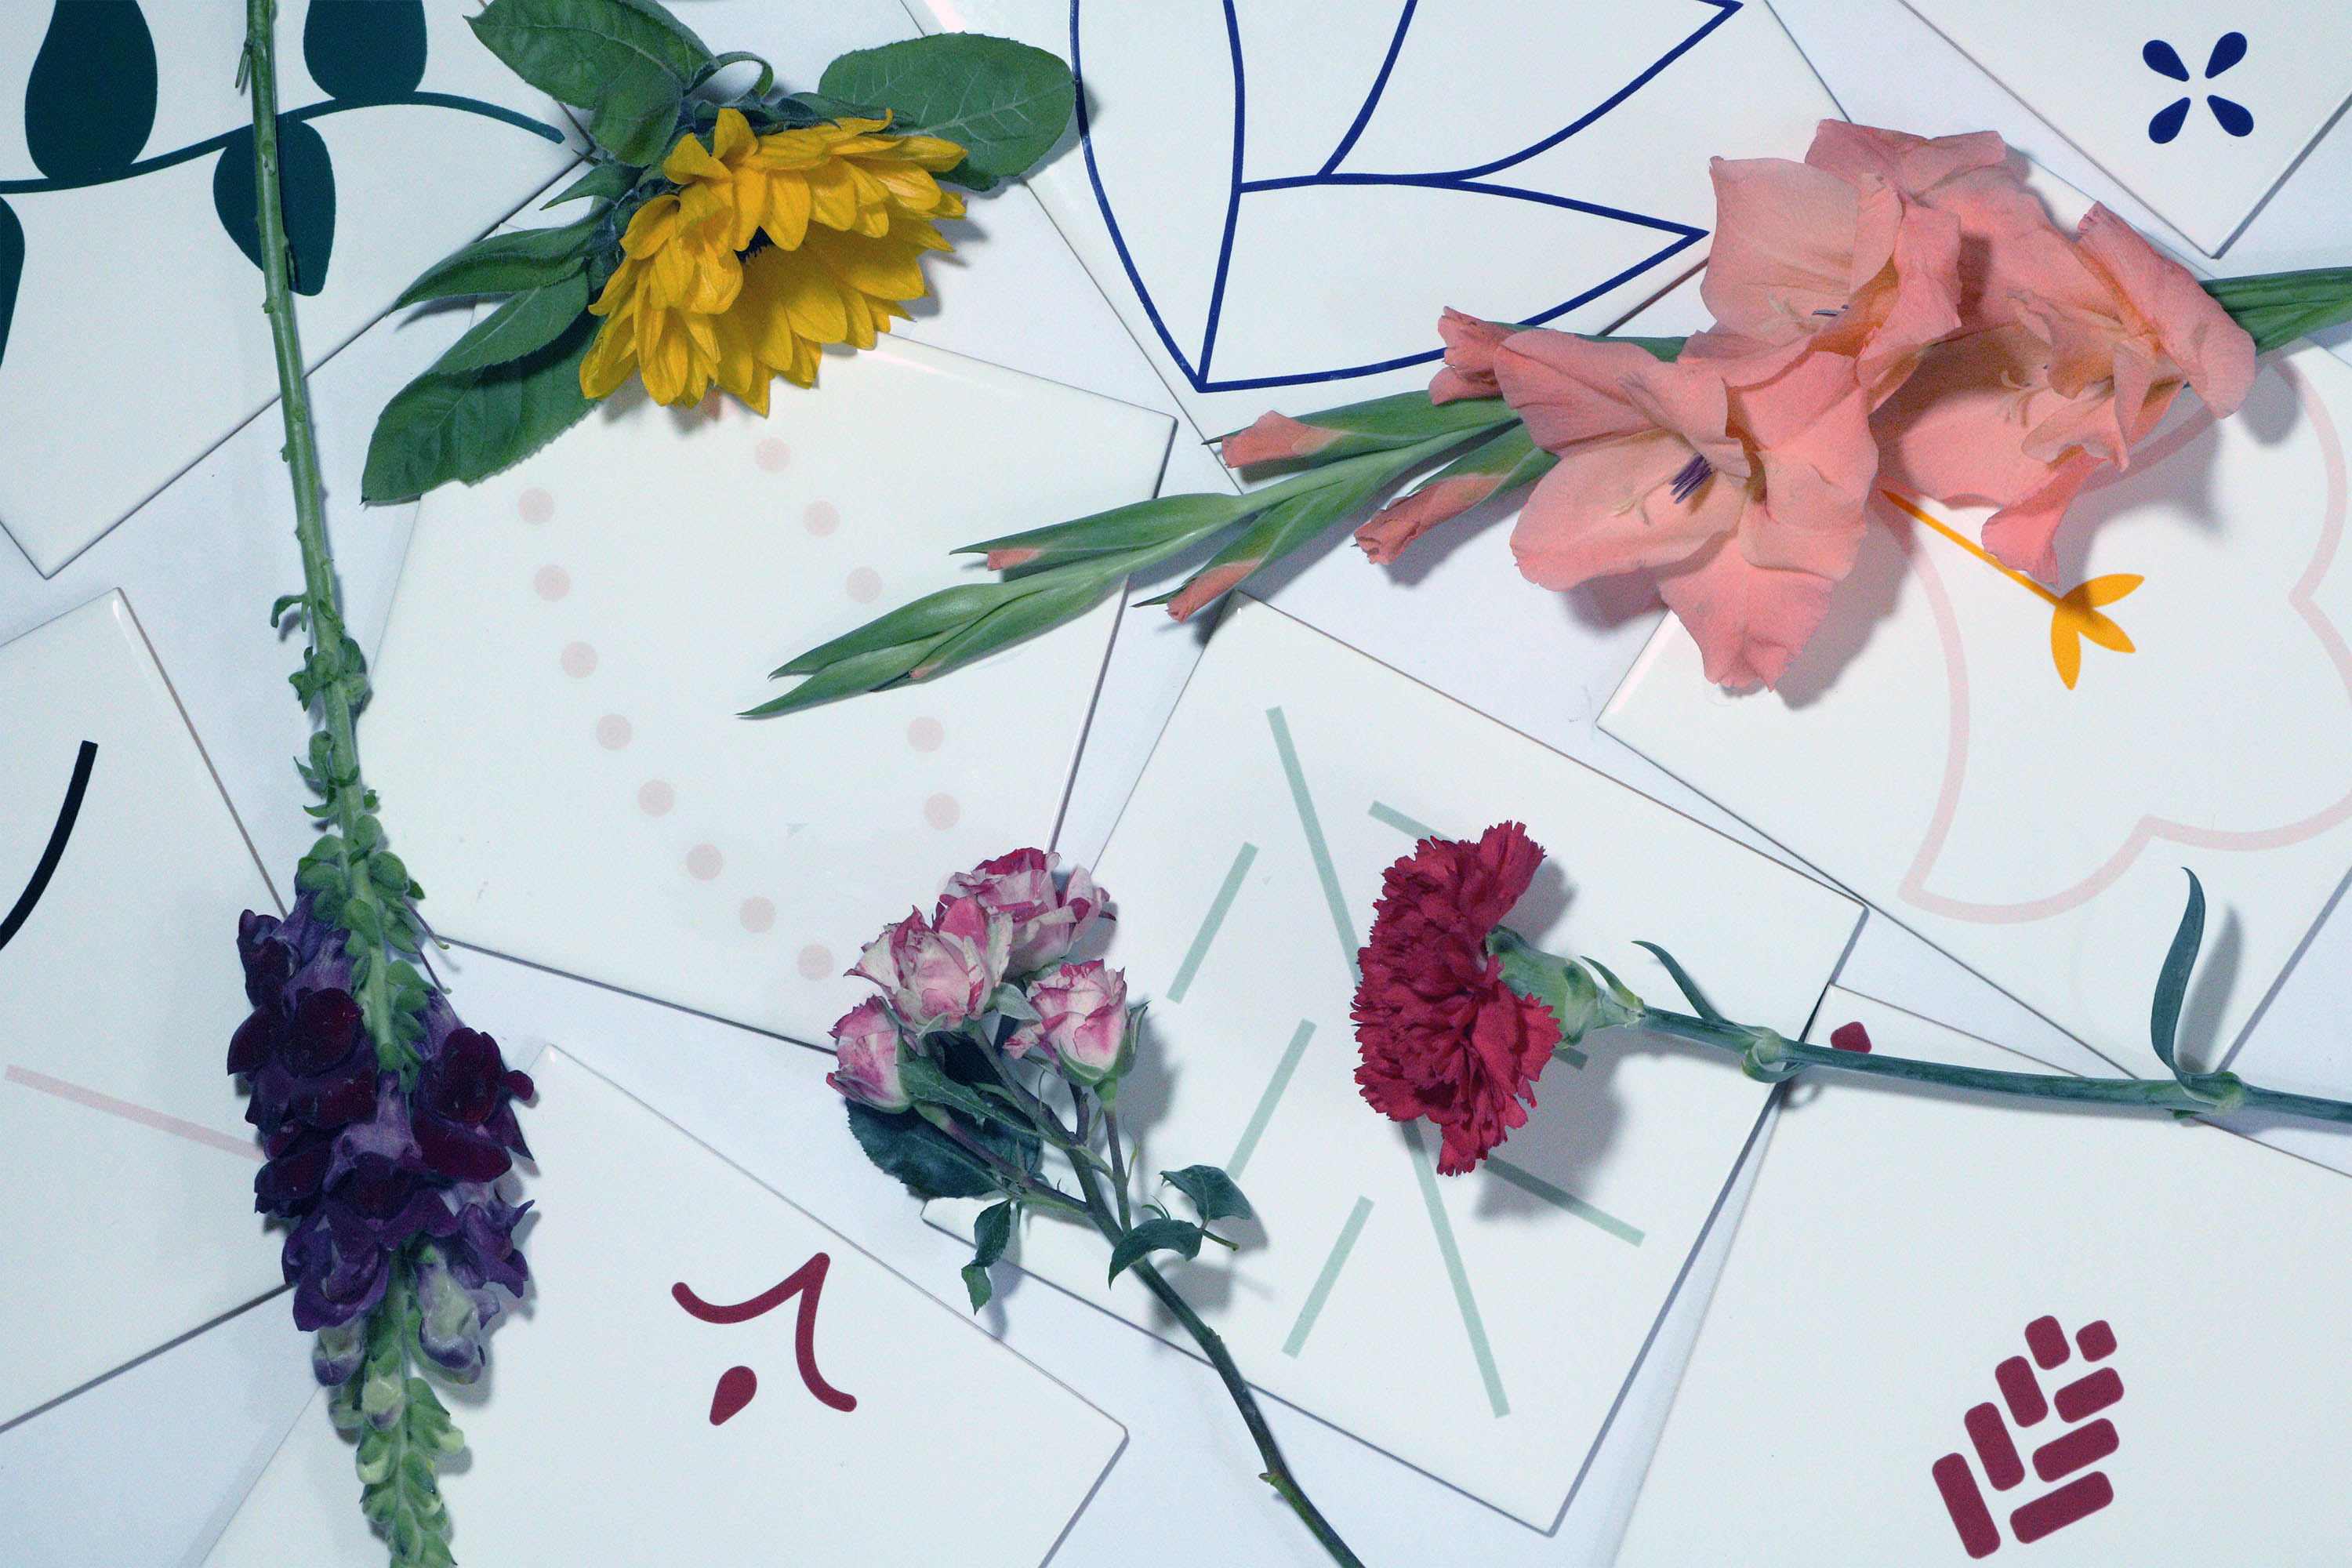 Azulejos decorados coloridos contornados com flores diversas